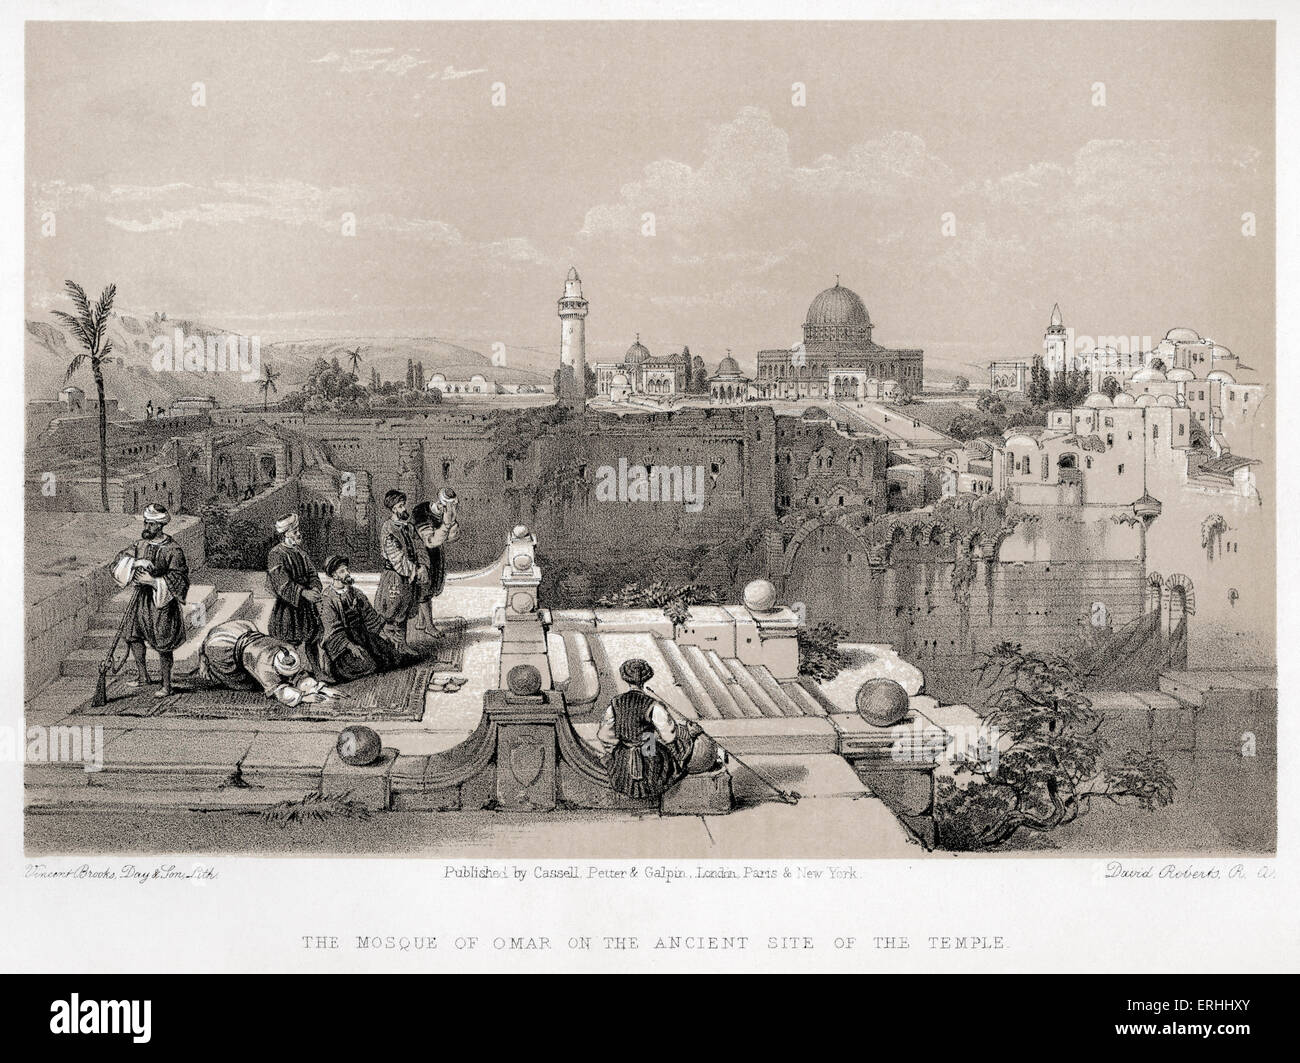 Die Moschee von Omar auf der alten Website des salomonischen Tempels in Jerusalem durch David Roberts. Lithographien des Heiligen Landes.  Kuppel Stockfoto